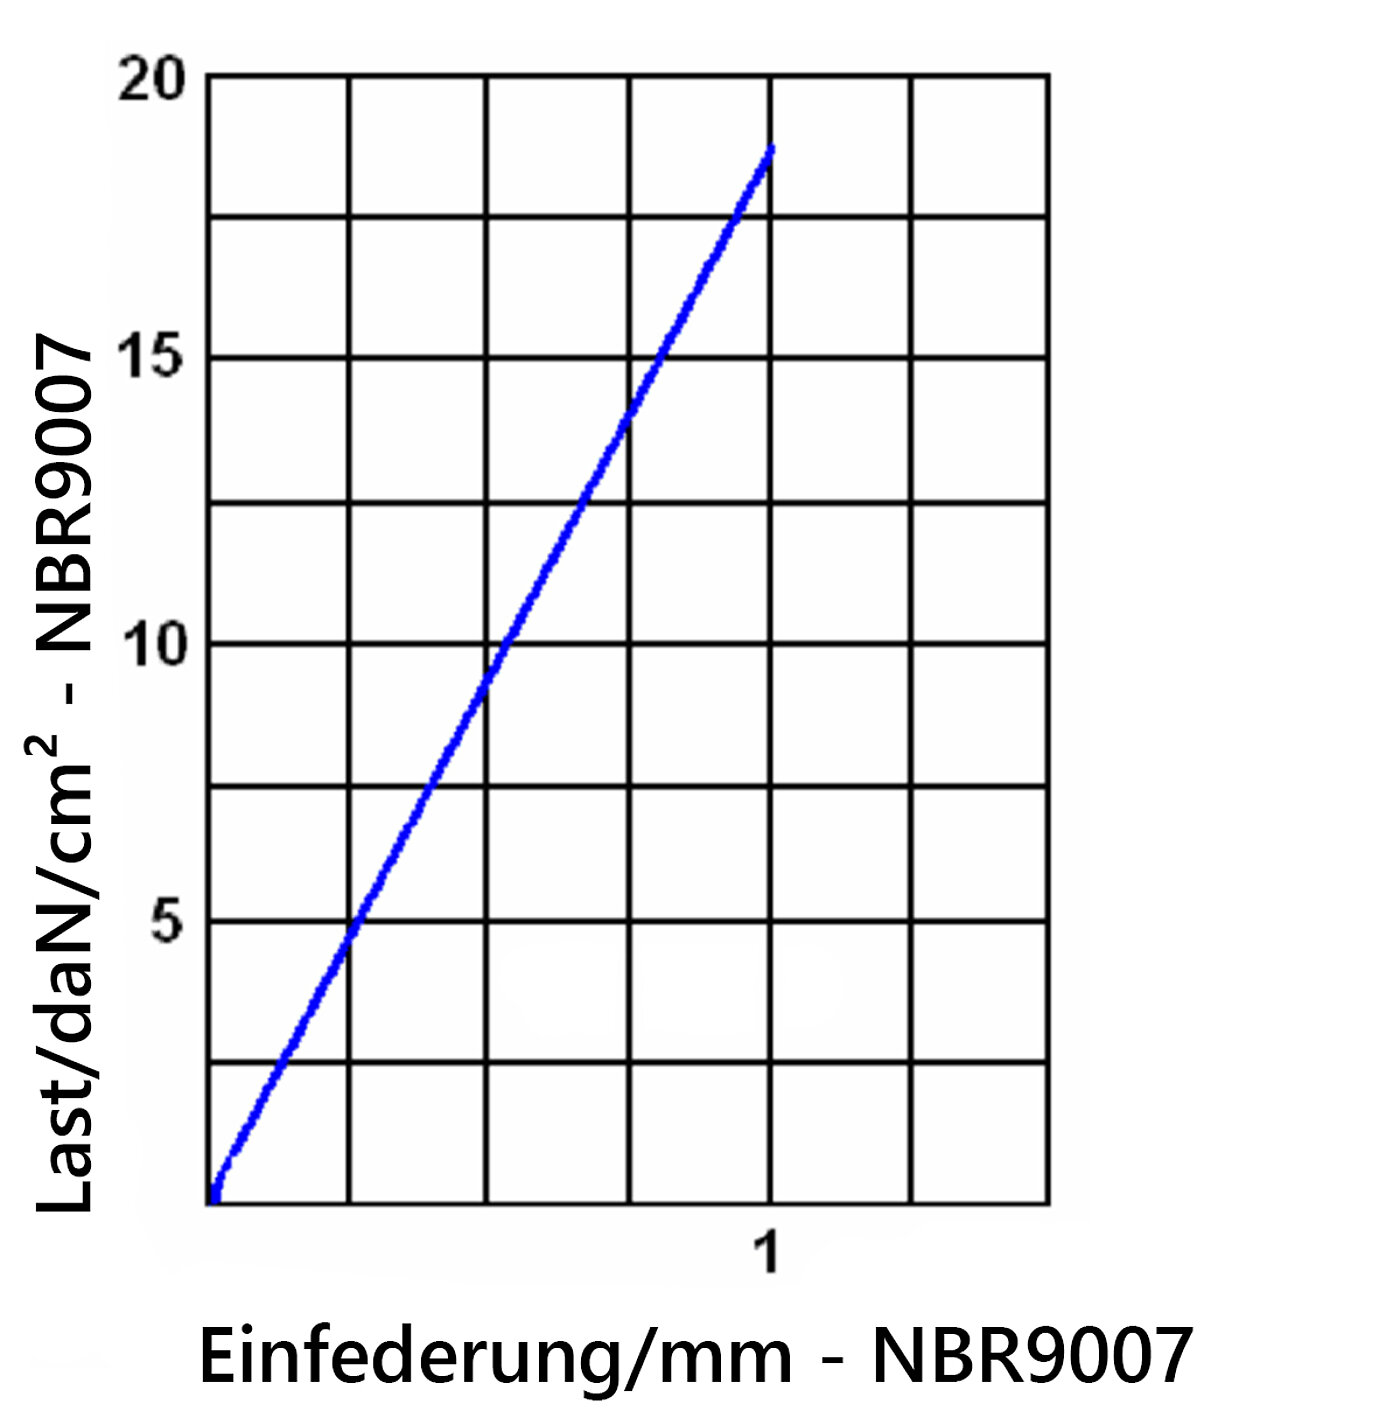 Diagramm der Einfederung der Elastomerplatte NBR9007 unter Last